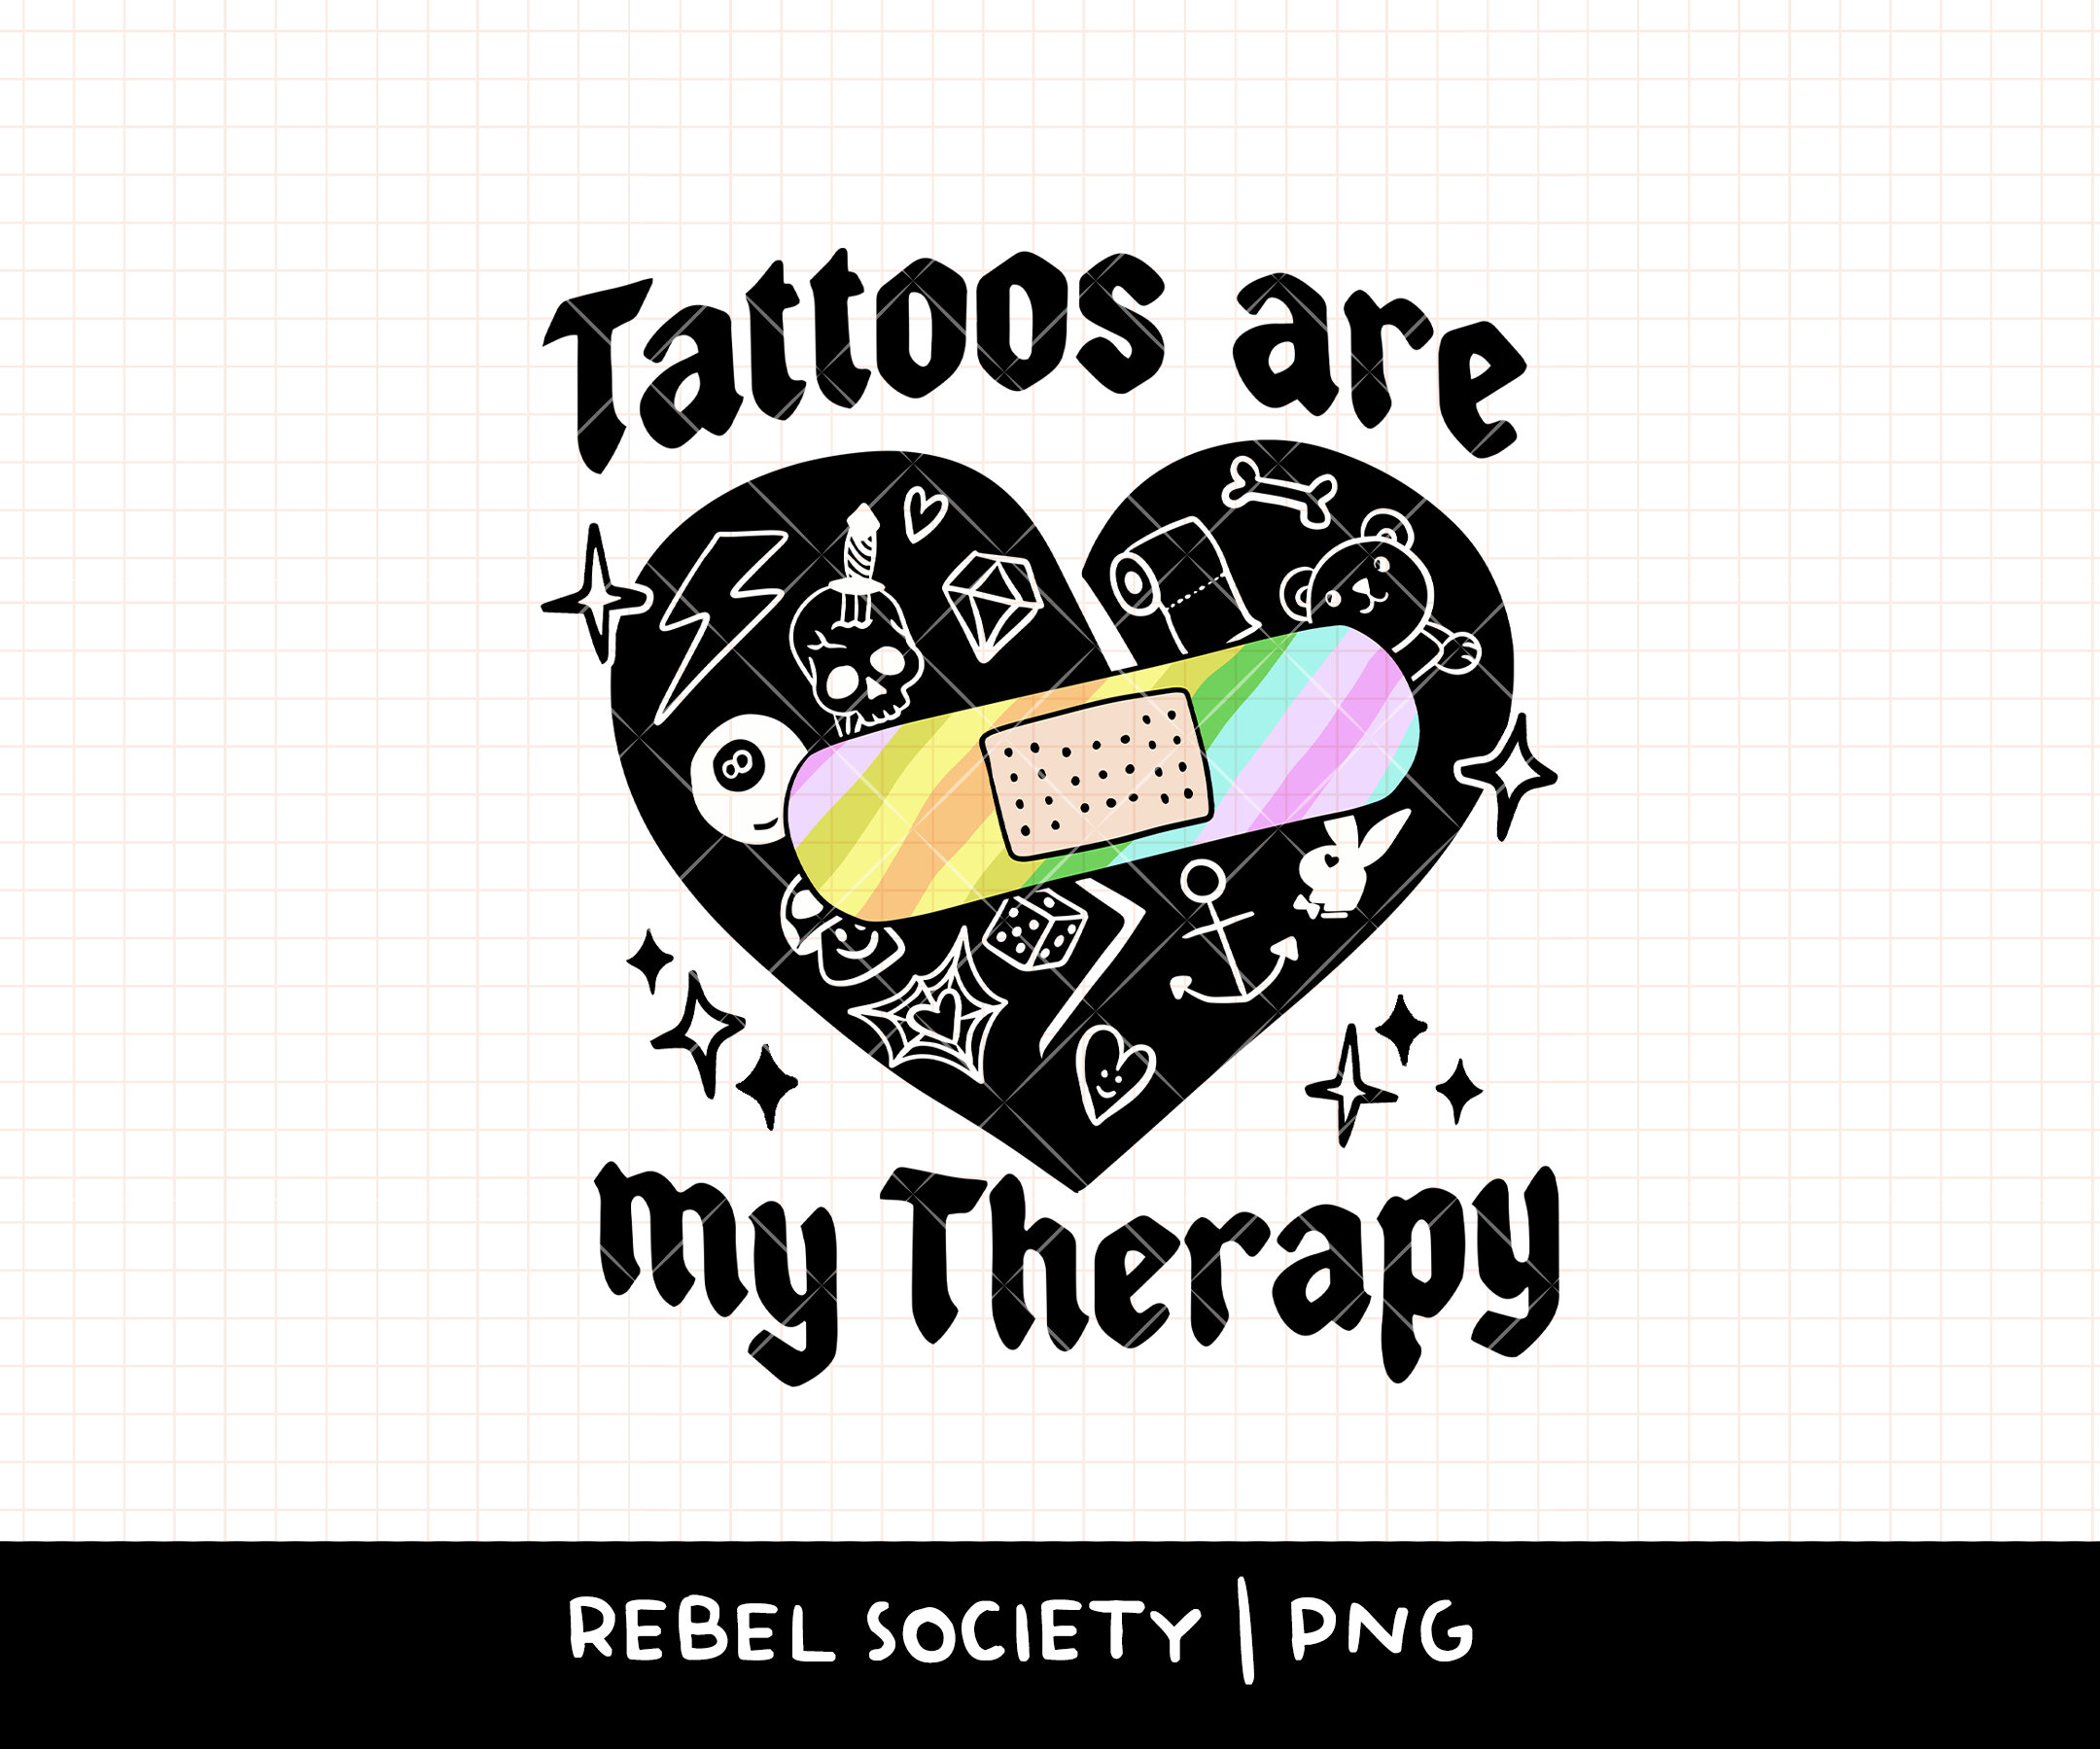 Tattoo Artist, Badass Gifts, I Love Tattoos, Tattoo Gifts, Tattoo